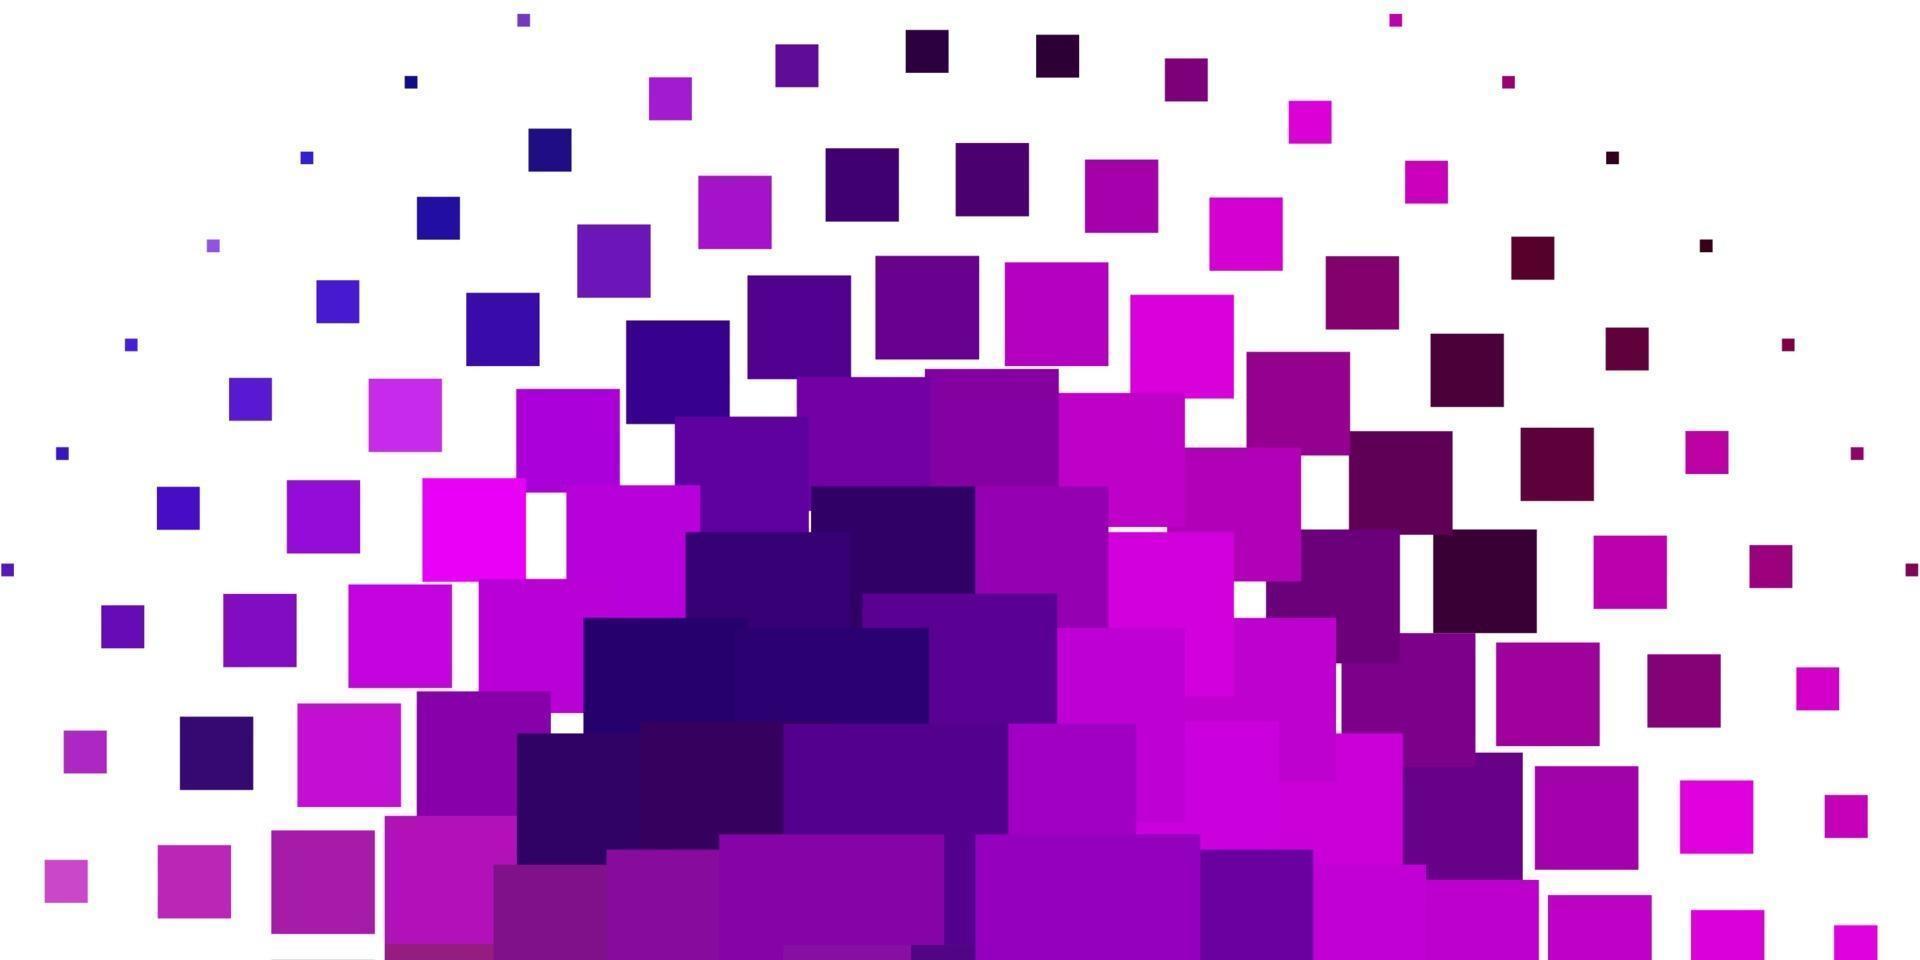 telón de fondo de vector multicolor claro con rectángulos.